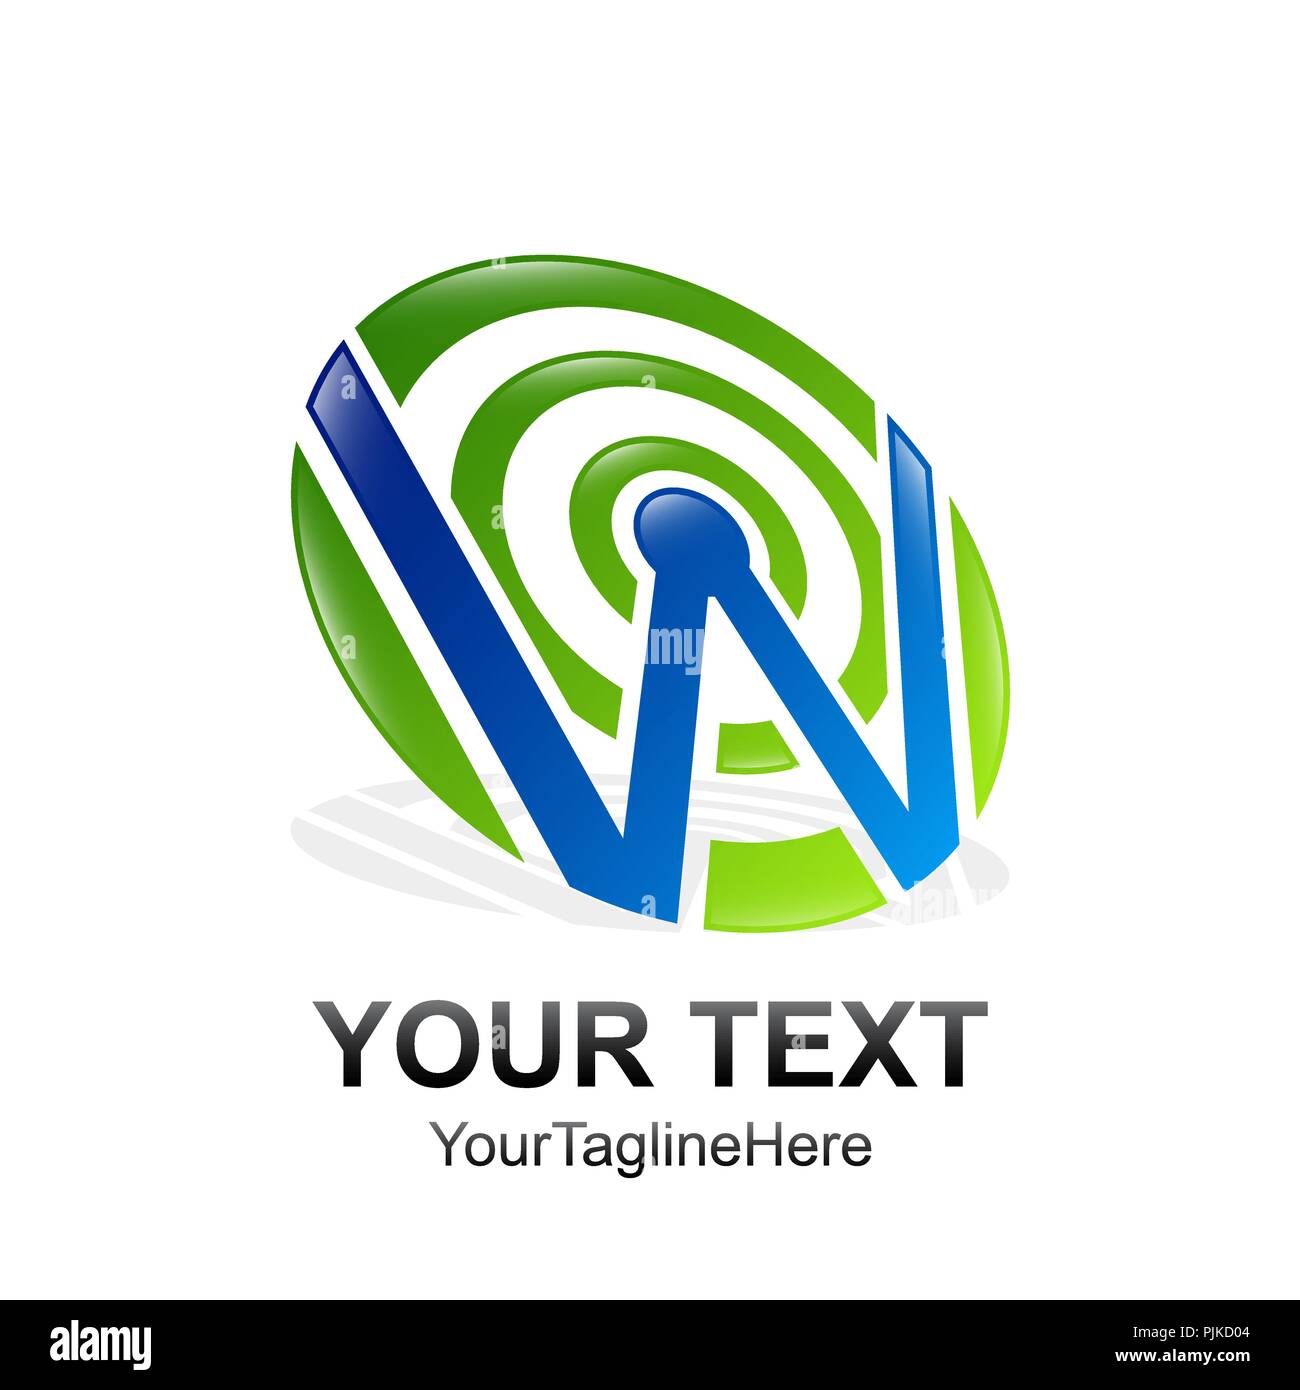 Anfangsbuchstabe W Logo template Blaugrün Kreis Design für Business und Unternehmen Identität Stock Vektor